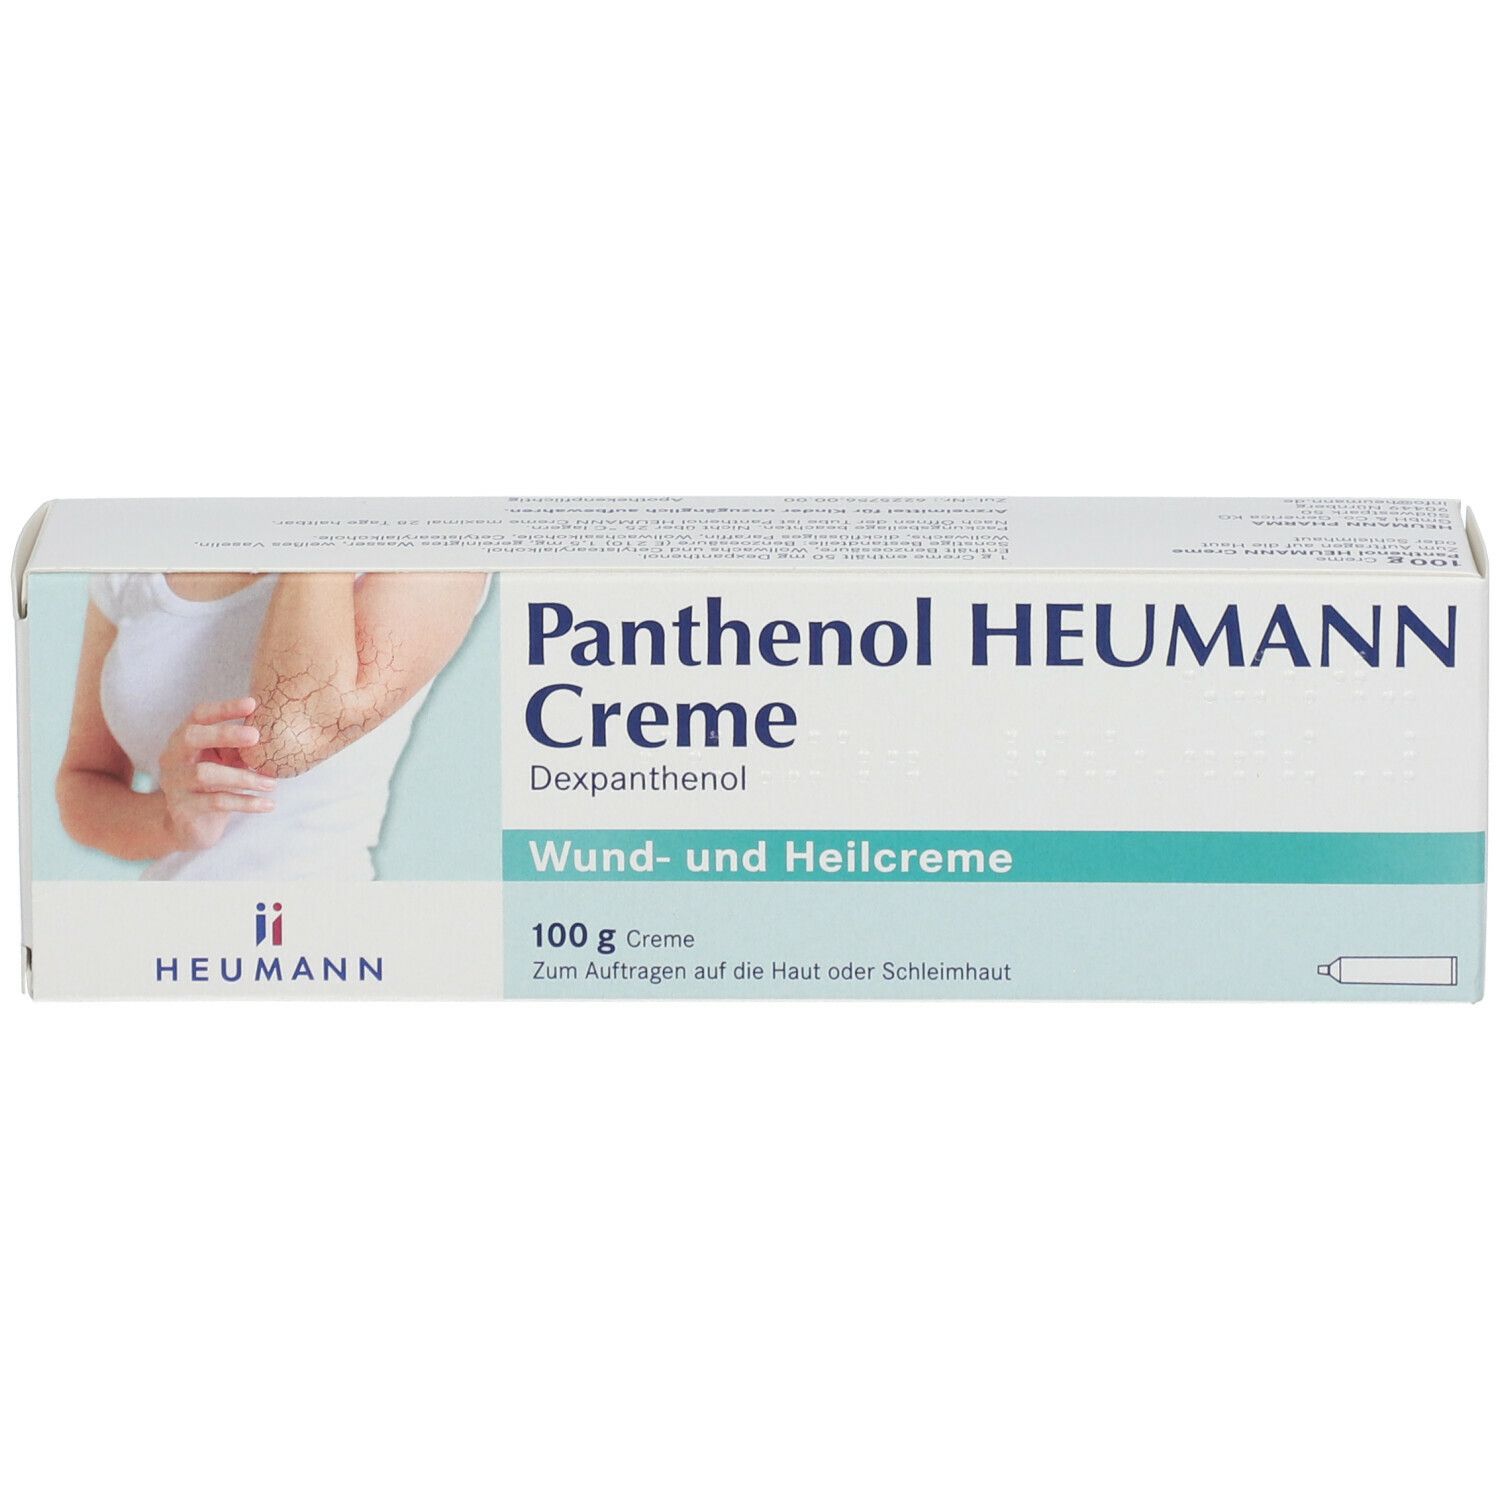 Panthenol Heumann Creme®